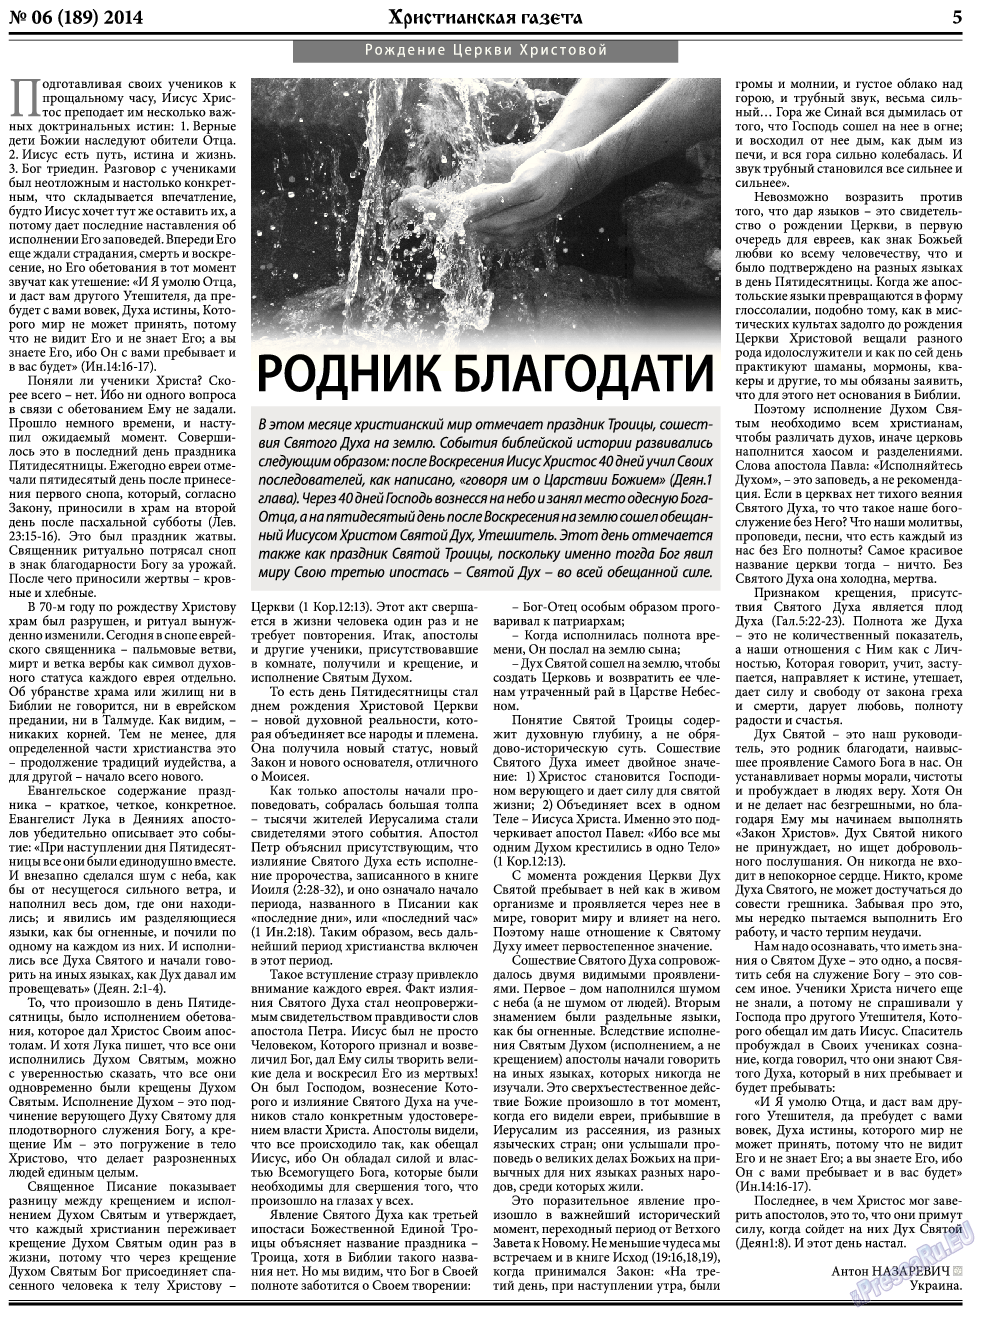 Христианская газета, газета. 2014 №6 стр.5